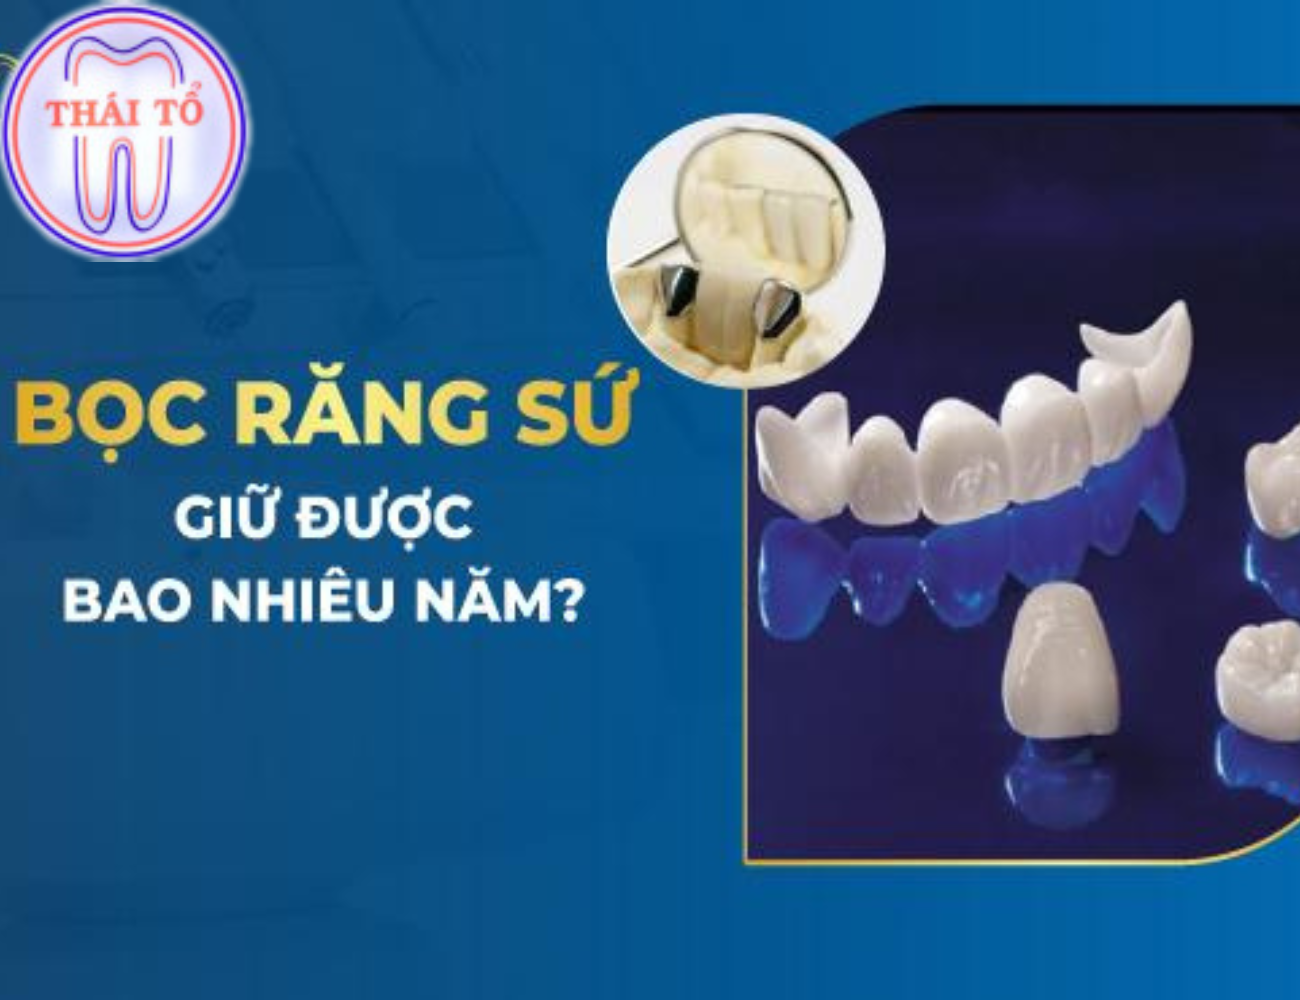 Nếu bạn biết cách vệ sinh, chăm sóc sức khỏe răng miệng thì răng sứ sẽ có tuổi thọ khá cao